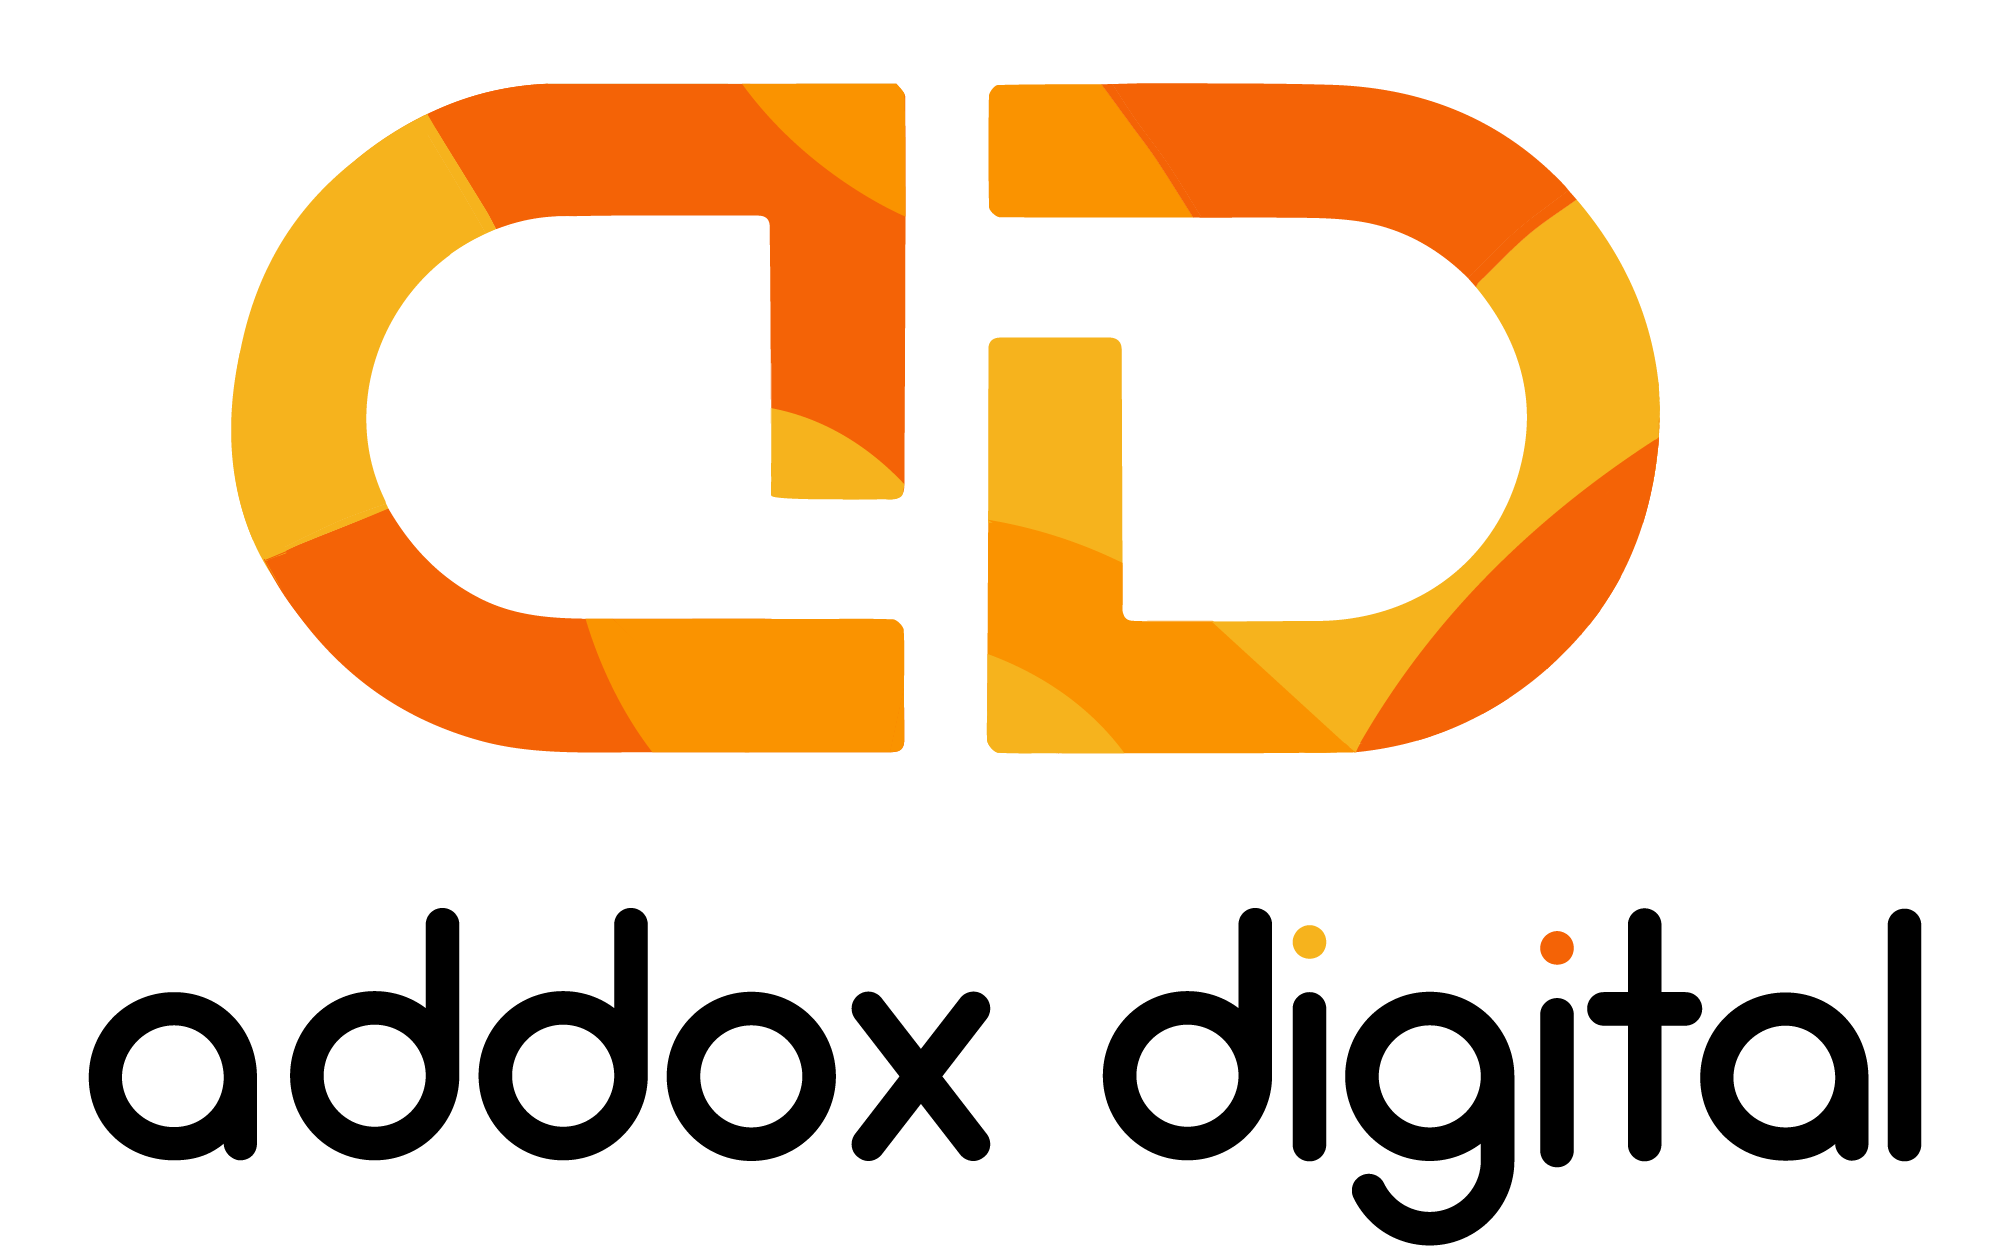 Addox Digital - Finest Digital Marketing Agency in Kerala